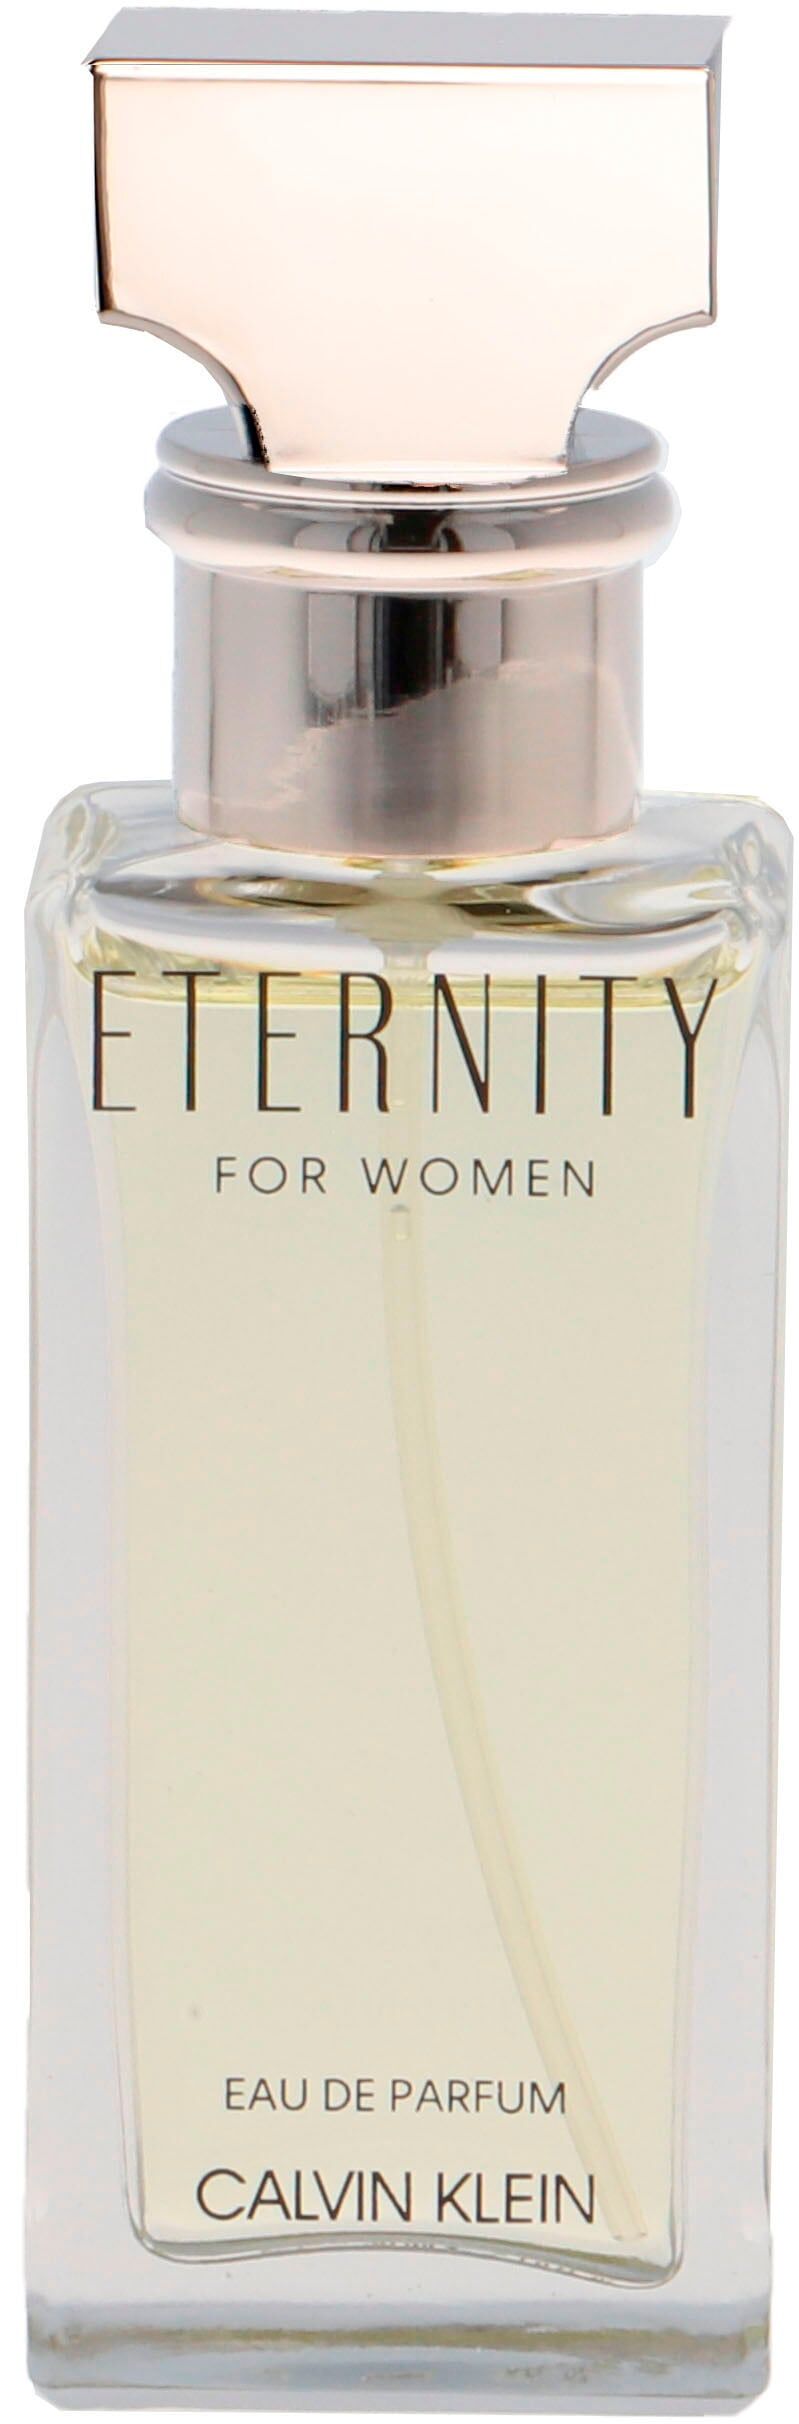 Eau de Parfum CALVIN KLEIN "Eternity" Parfüms Gr. 30 ml, beige (goldfarben) Damen Eau de Parfum